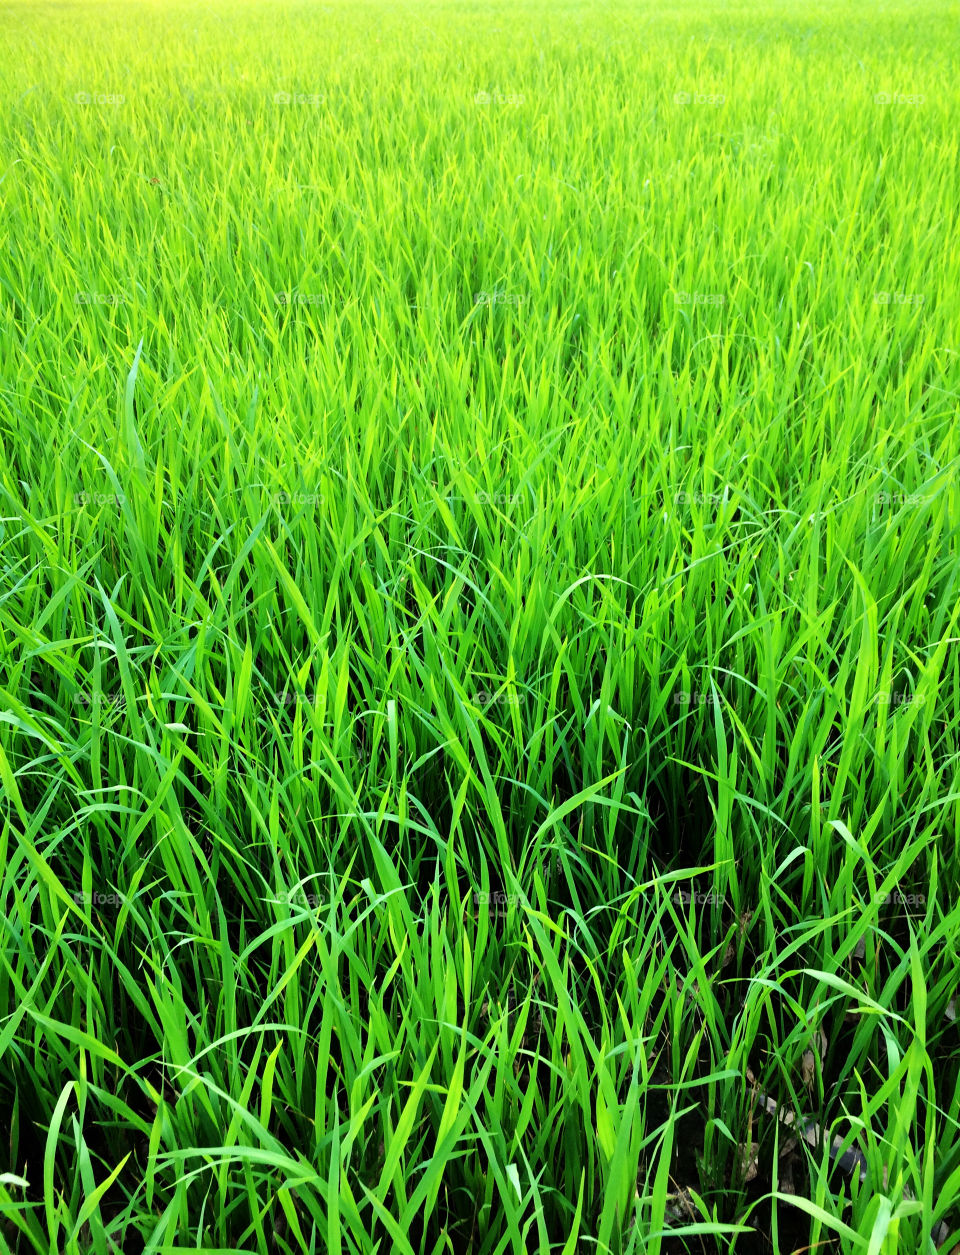 Sunlight on rice field